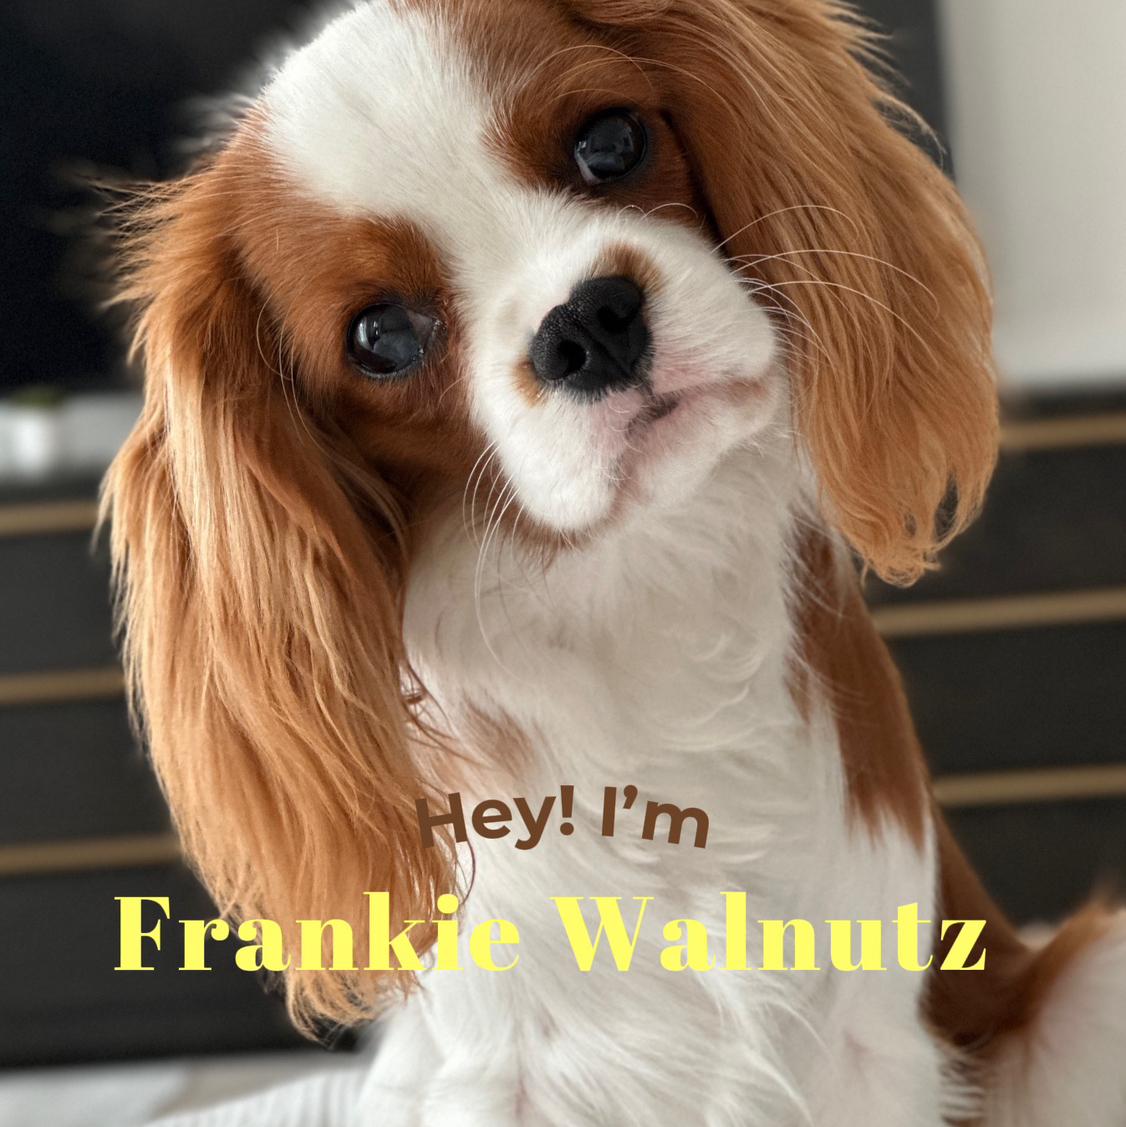 FrankieWalnutz's images